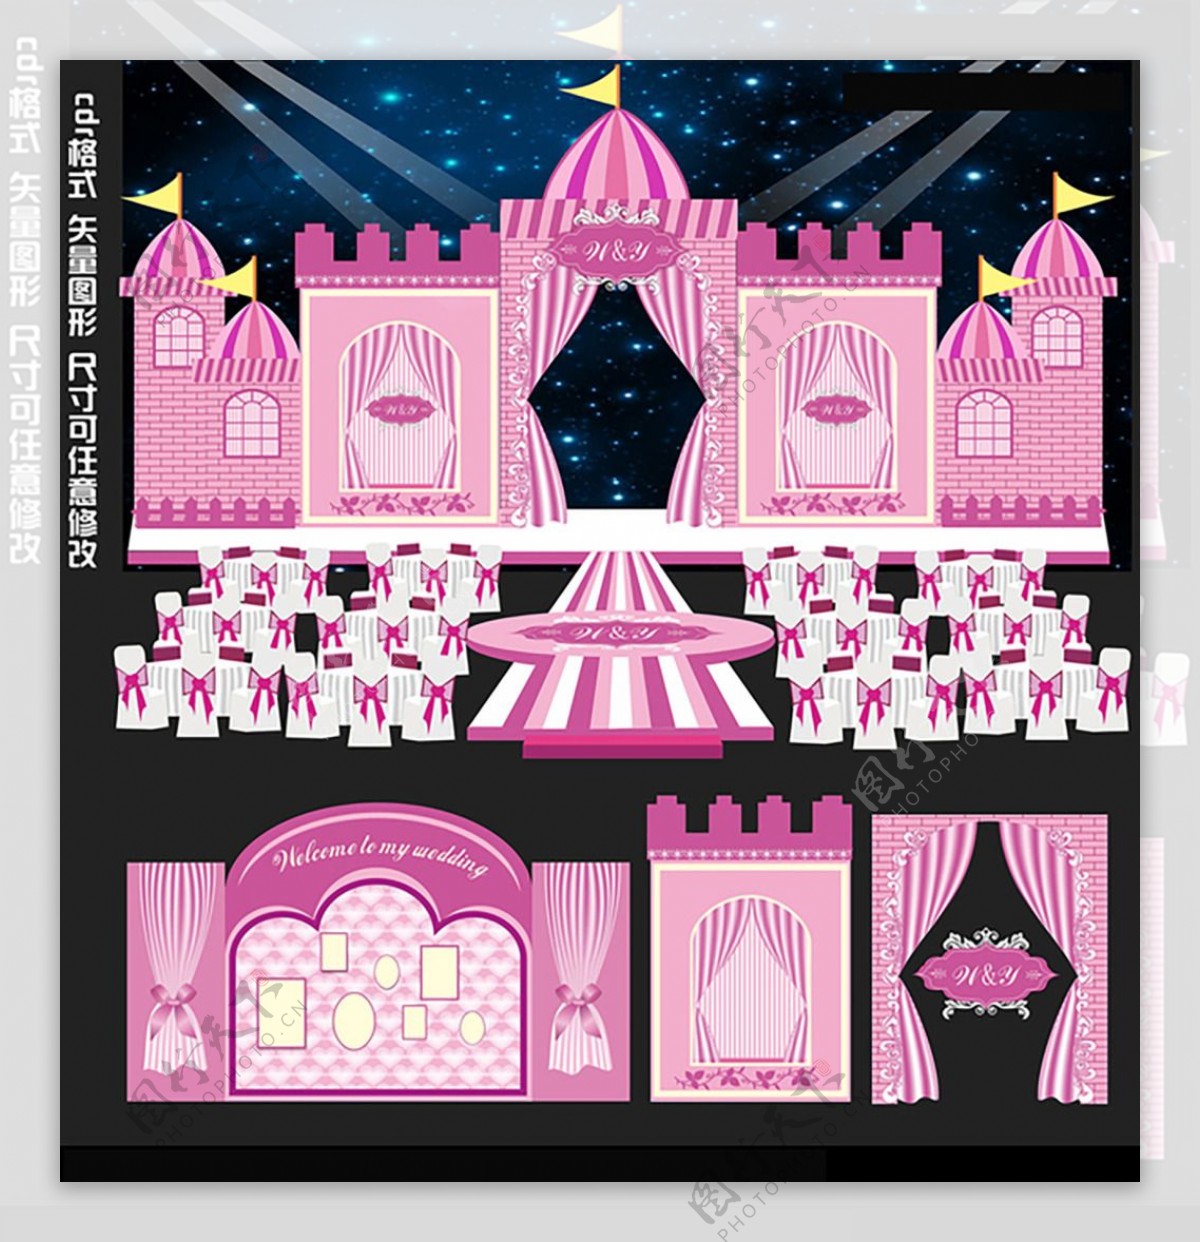 粉色城堡主题